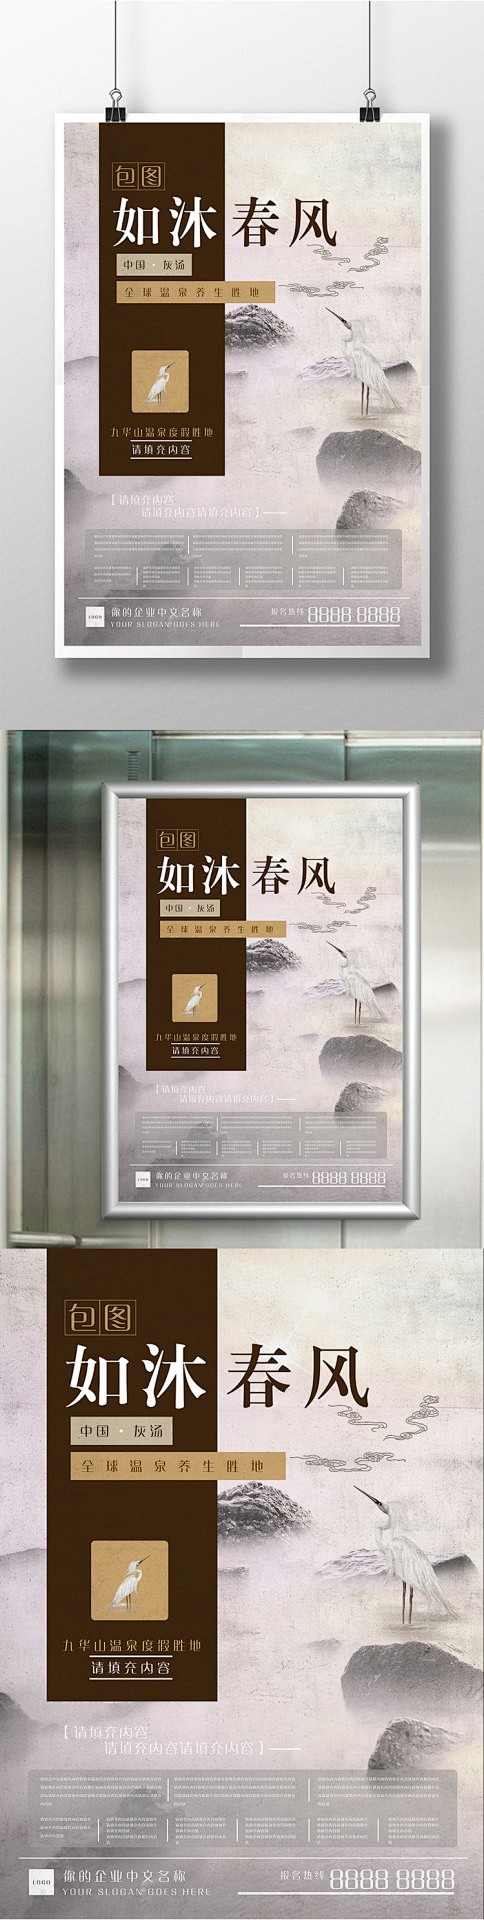 九华山旅游温泉度假电梯宣传海报设计展架 ...